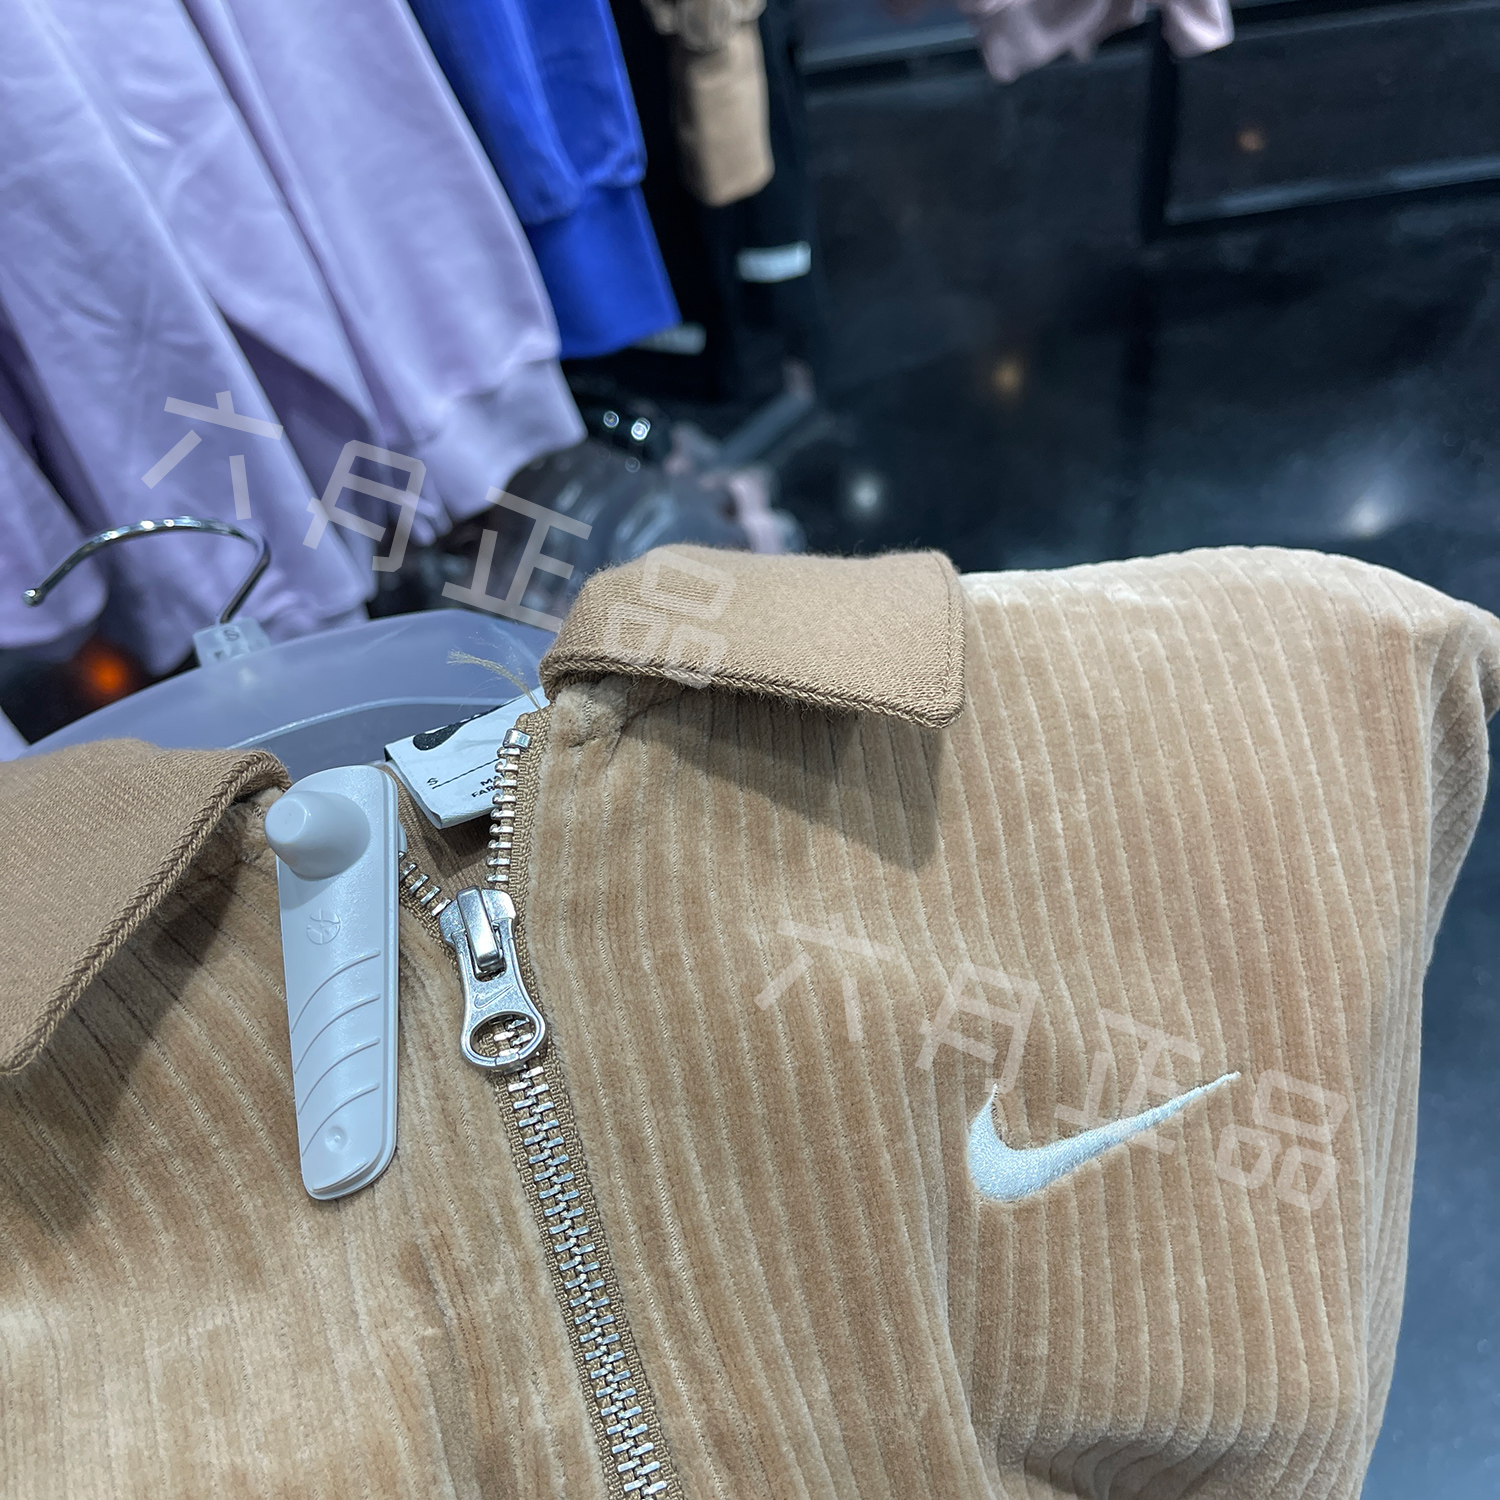 正品Nike耐克女子翻领运动卫衣透气舒适休闲套头衫 DQ5939-258-图1